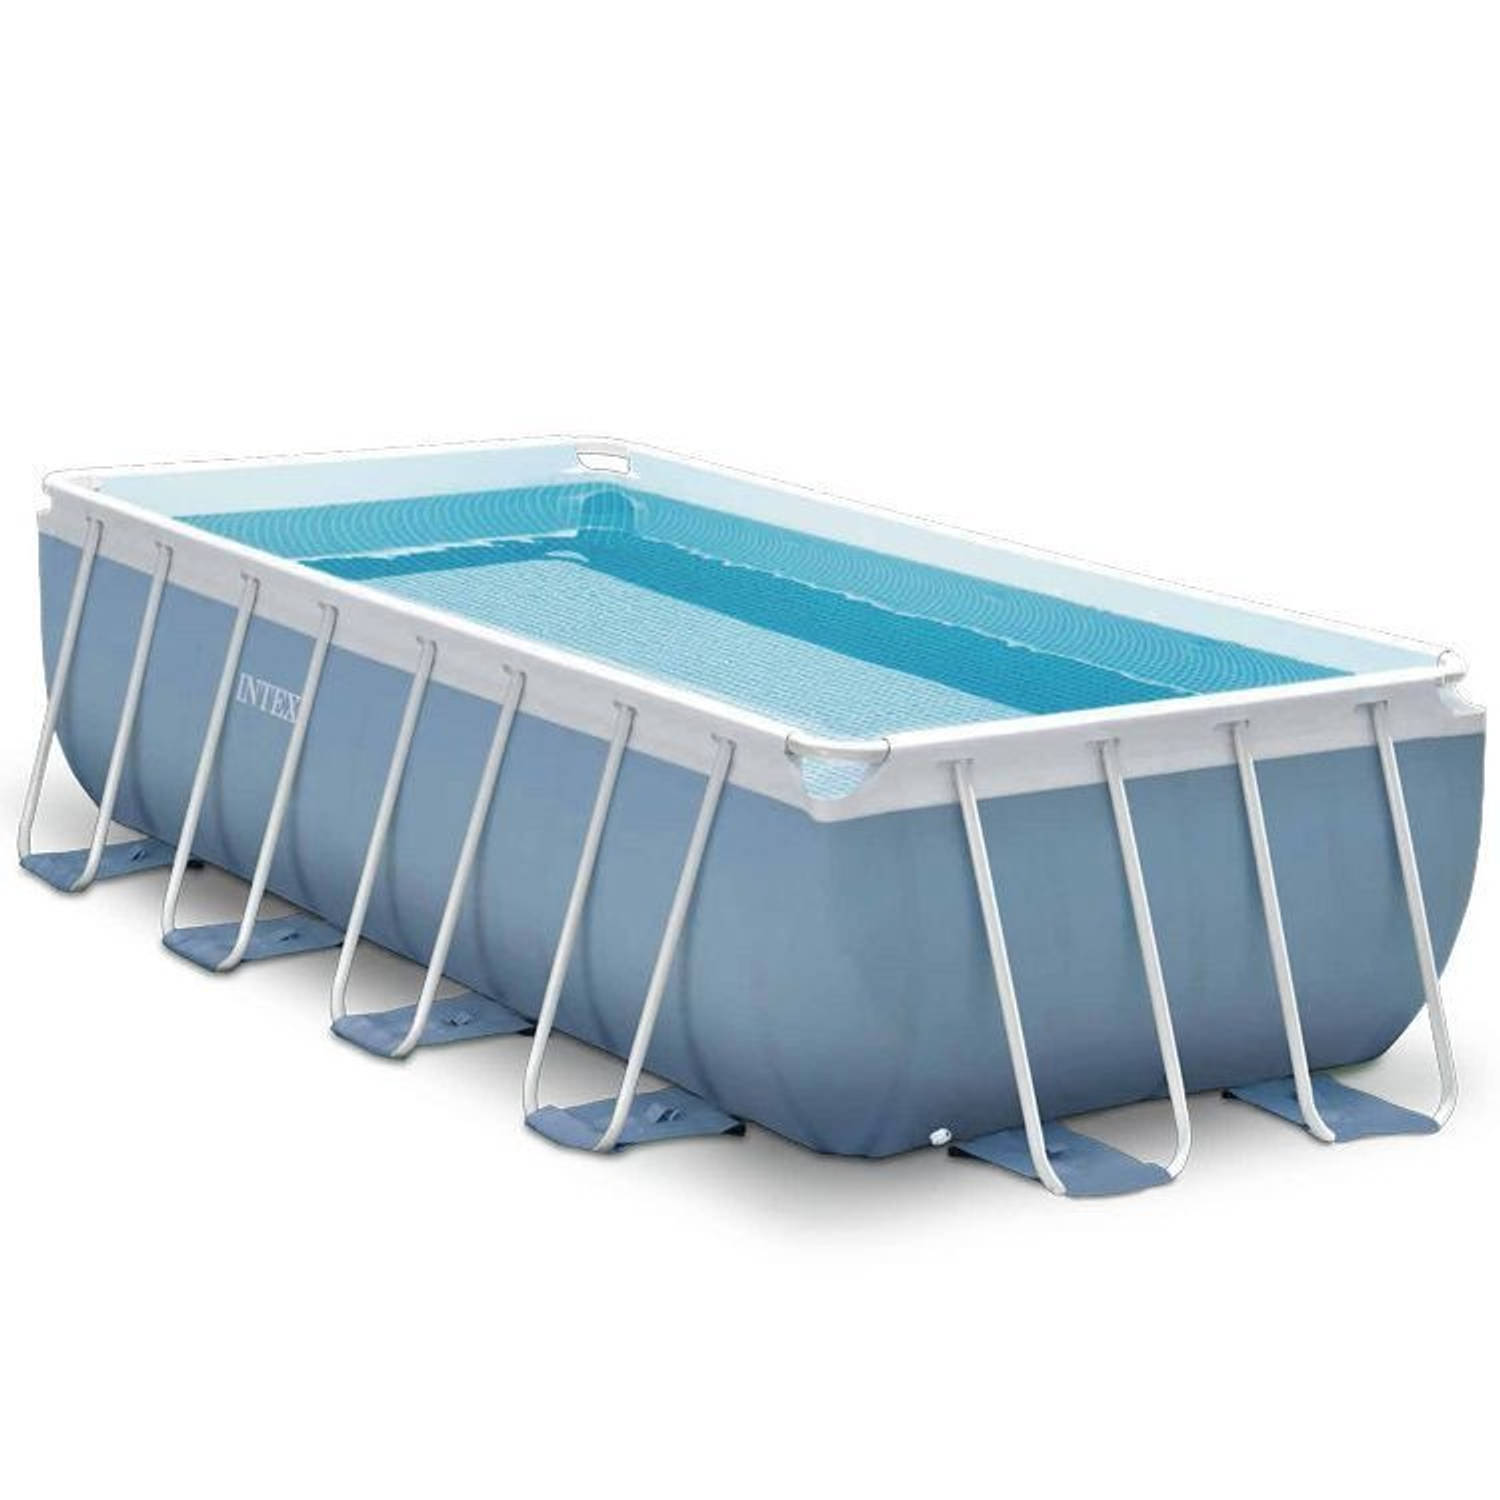 Intex Prism Frame Opzetzwembad Met Accessoires 400 X 200 Cm Blauw